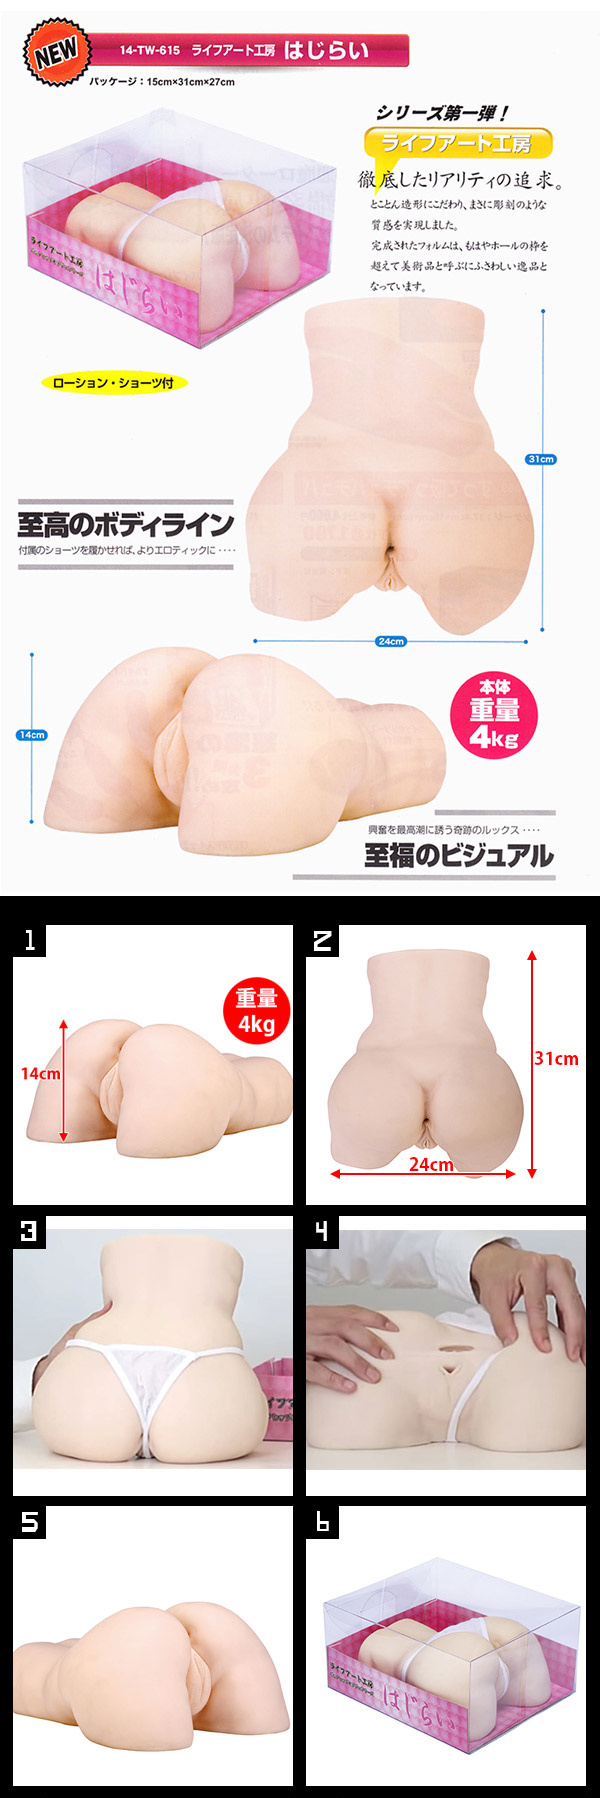 日本LOVE CLOUD‧ライフアート工房 重量級4KG雙穴性感翹臀自慰器《不適用超商取貨》